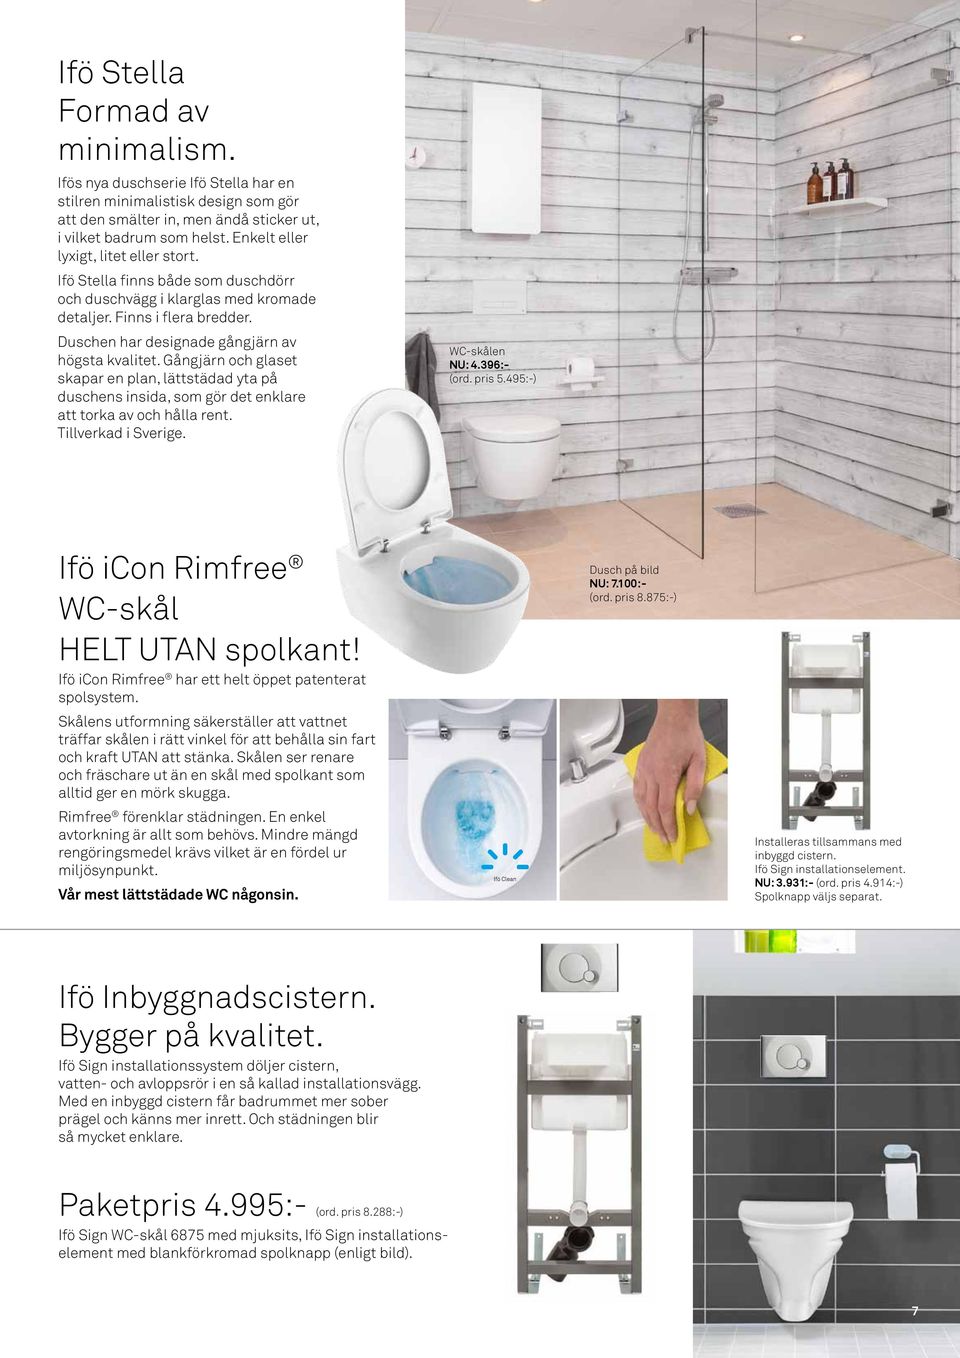 Gångjärn och glaset skapar en plan, lättstädad yta på duschens insida, som gör det enklare att torka av och hålla rent. Tillverkad i Sverige. WC-skålen NU: 4.396:- (ord. pris 5.